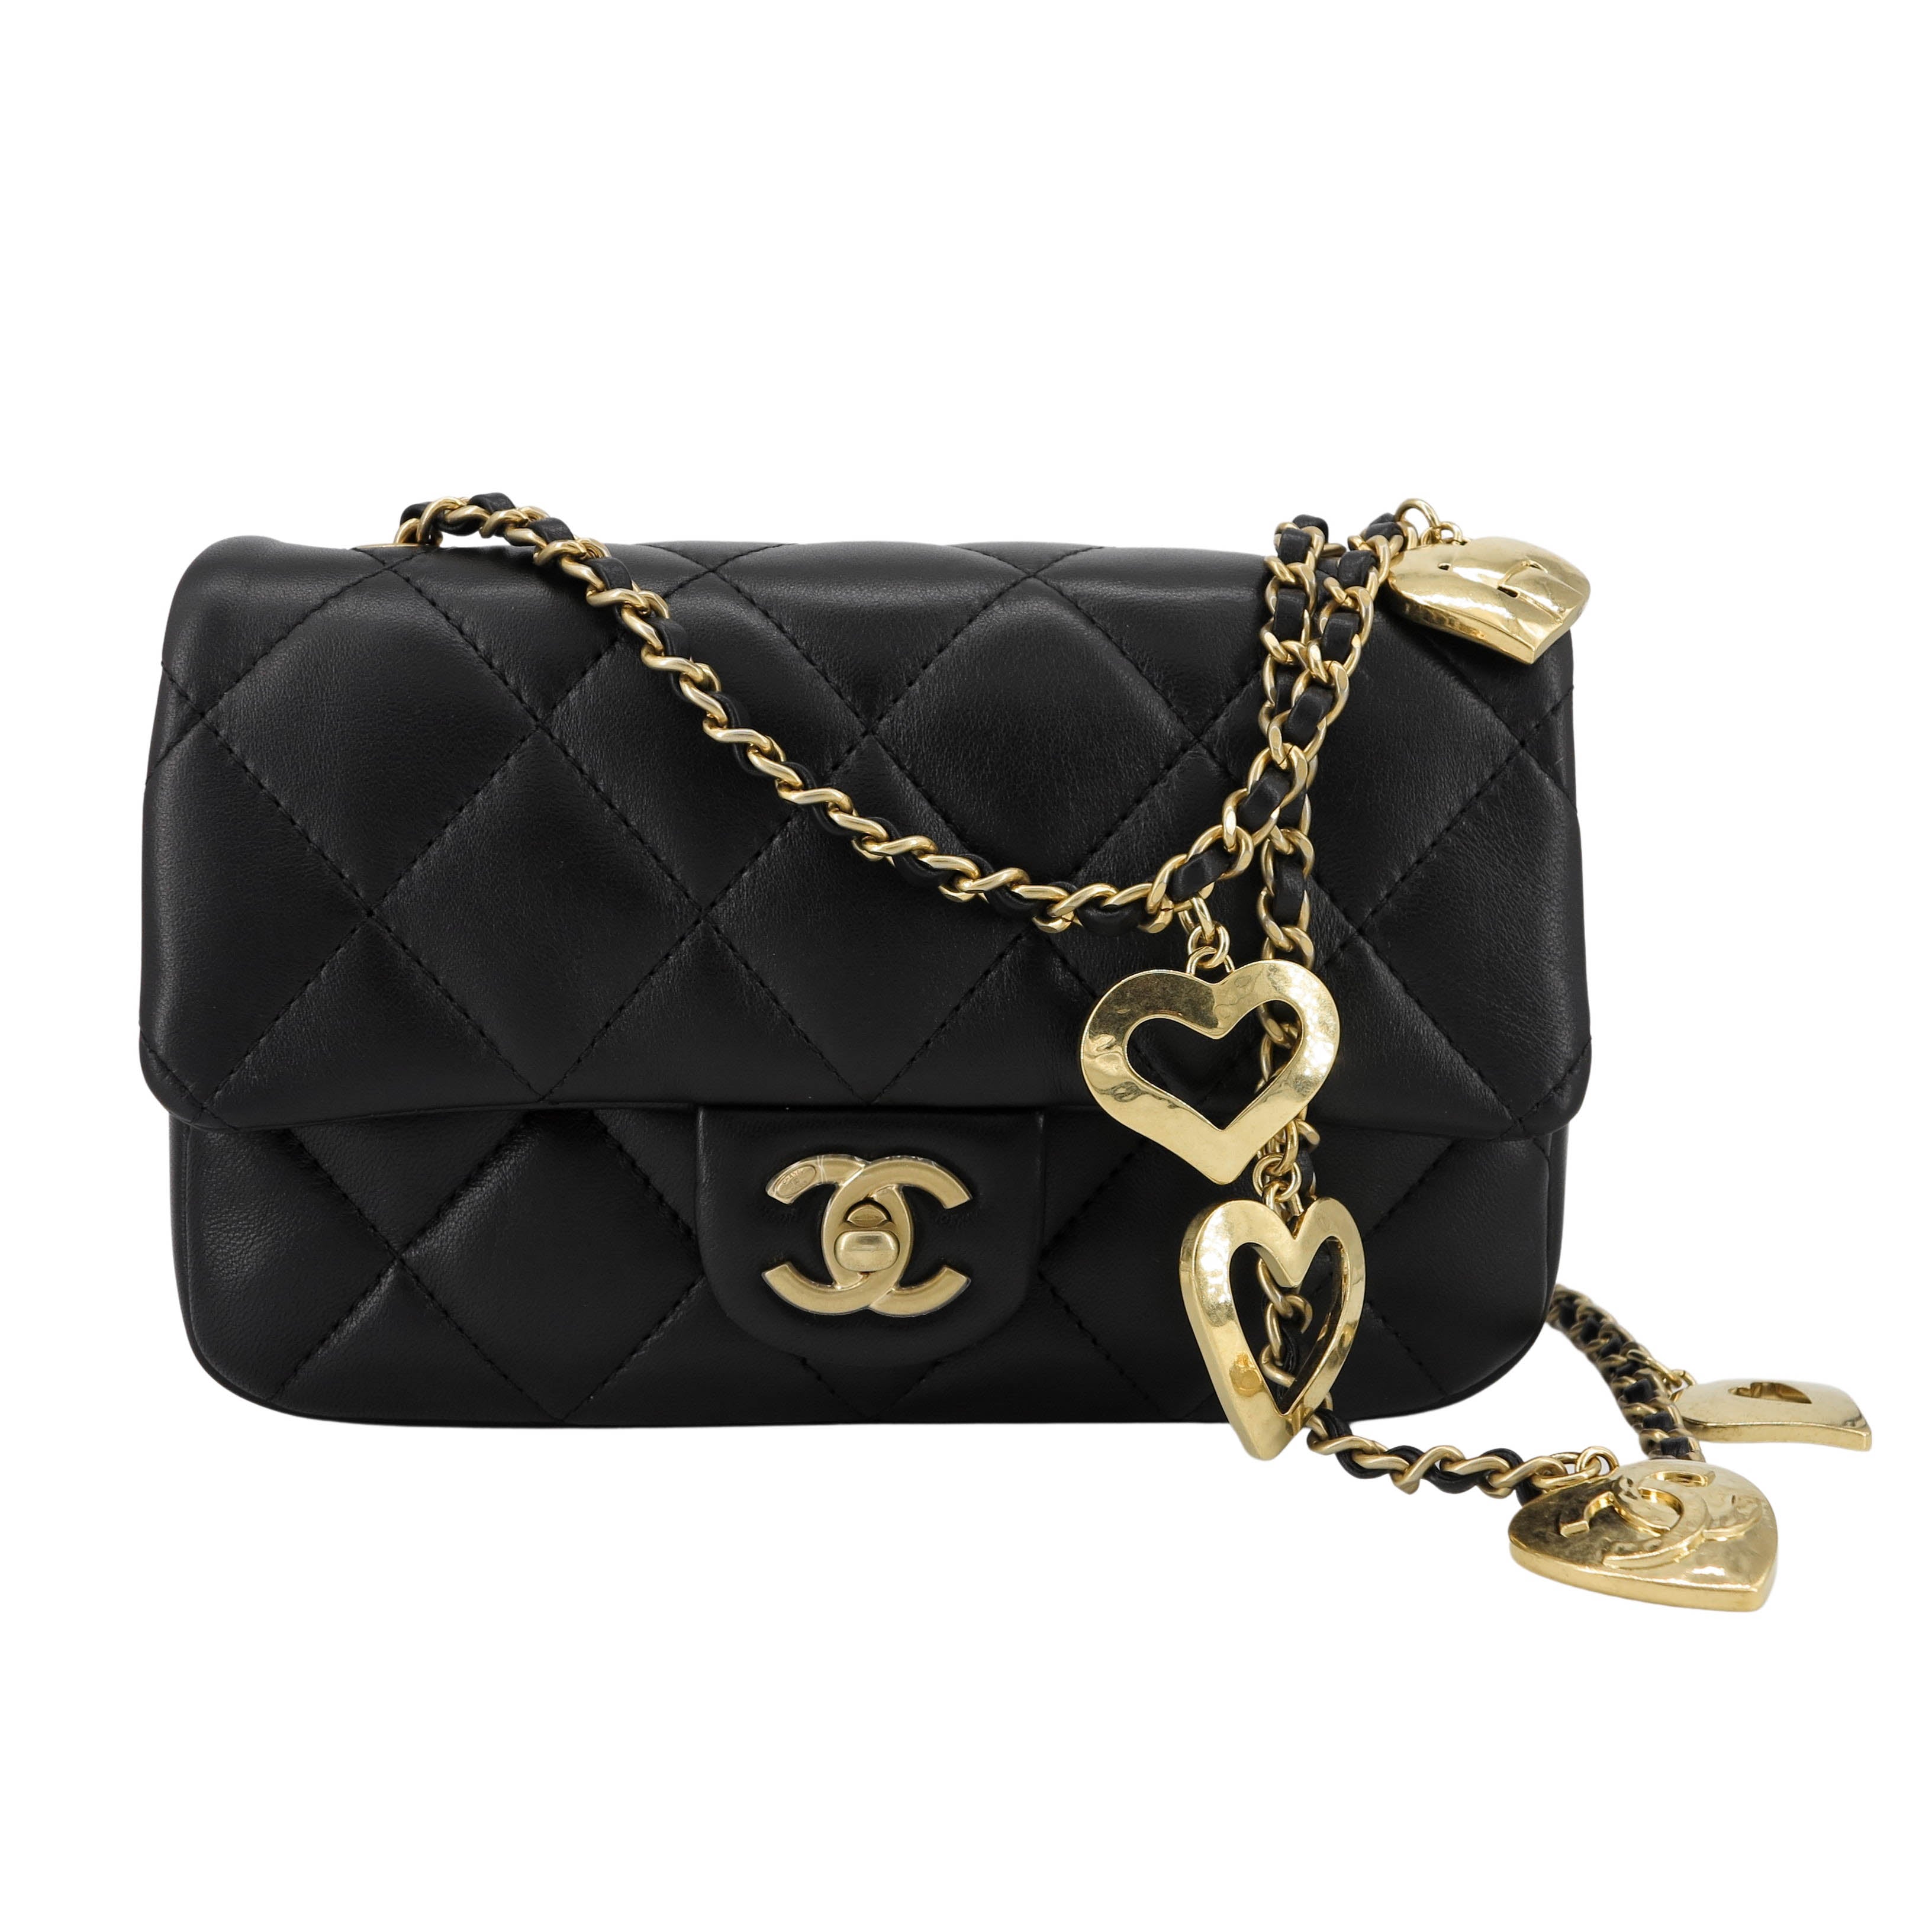 Chanel classic bag 20 cm  Chanel classic, Bags, Chanel